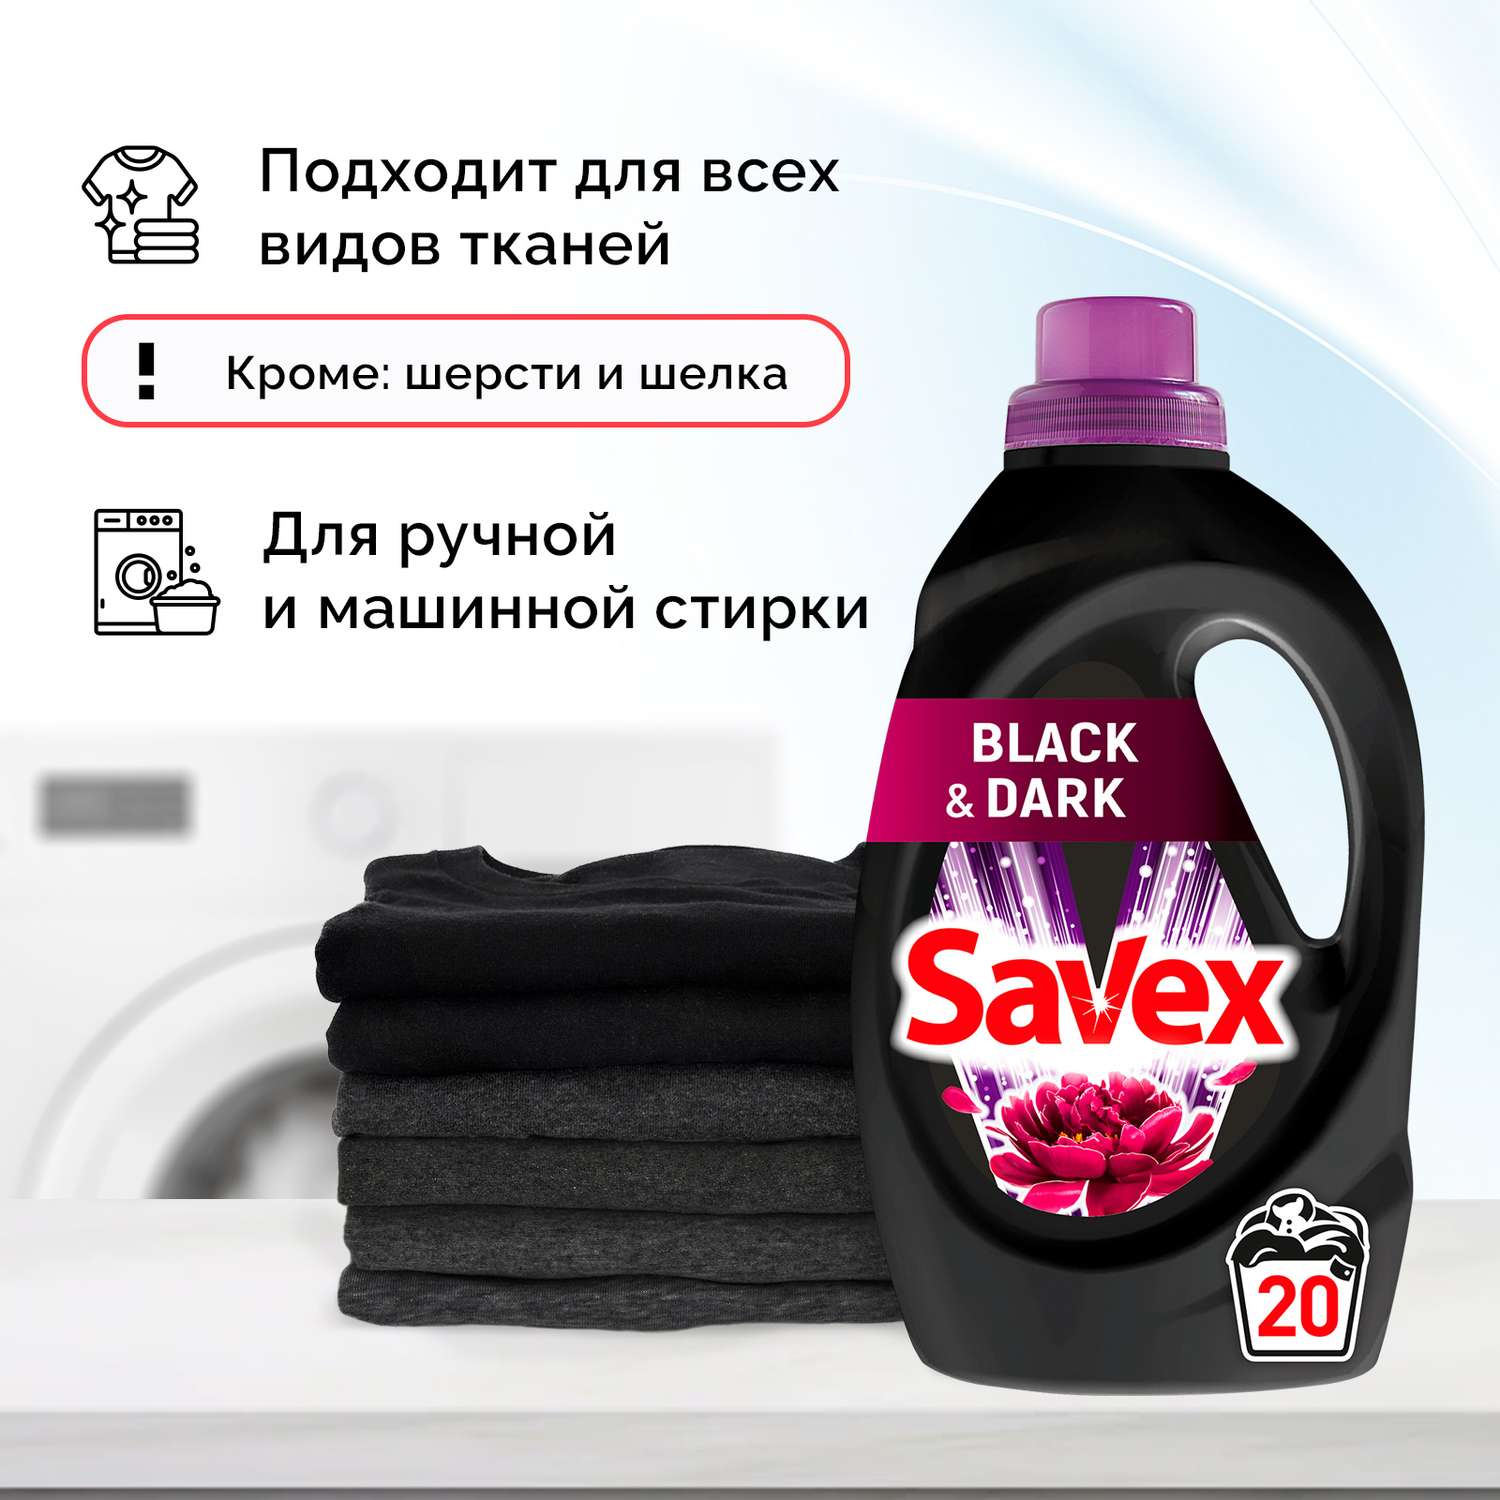 Гель для стирки SAVEX для черного и темного белья 2 в 1 1л - фото 4